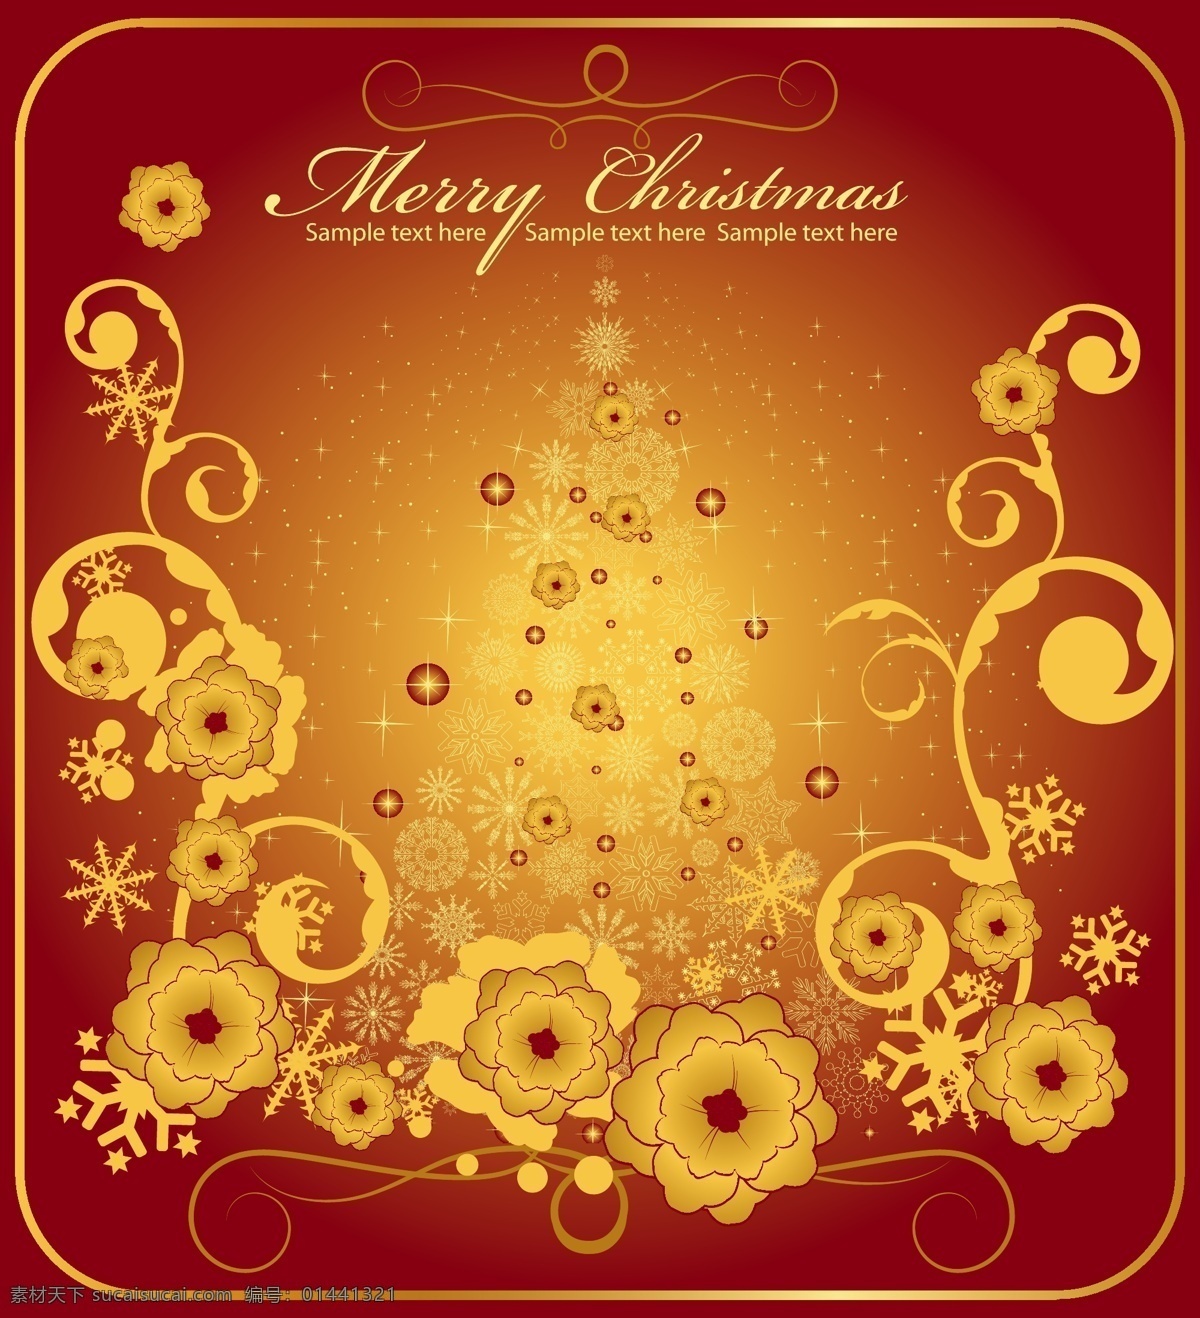 矢量 圣诞节 红色 铜铃 花朵 花纹 蜡烛 礼物 圣诞树 雪花 闪光 挂 球 圆球 金色 节日素材